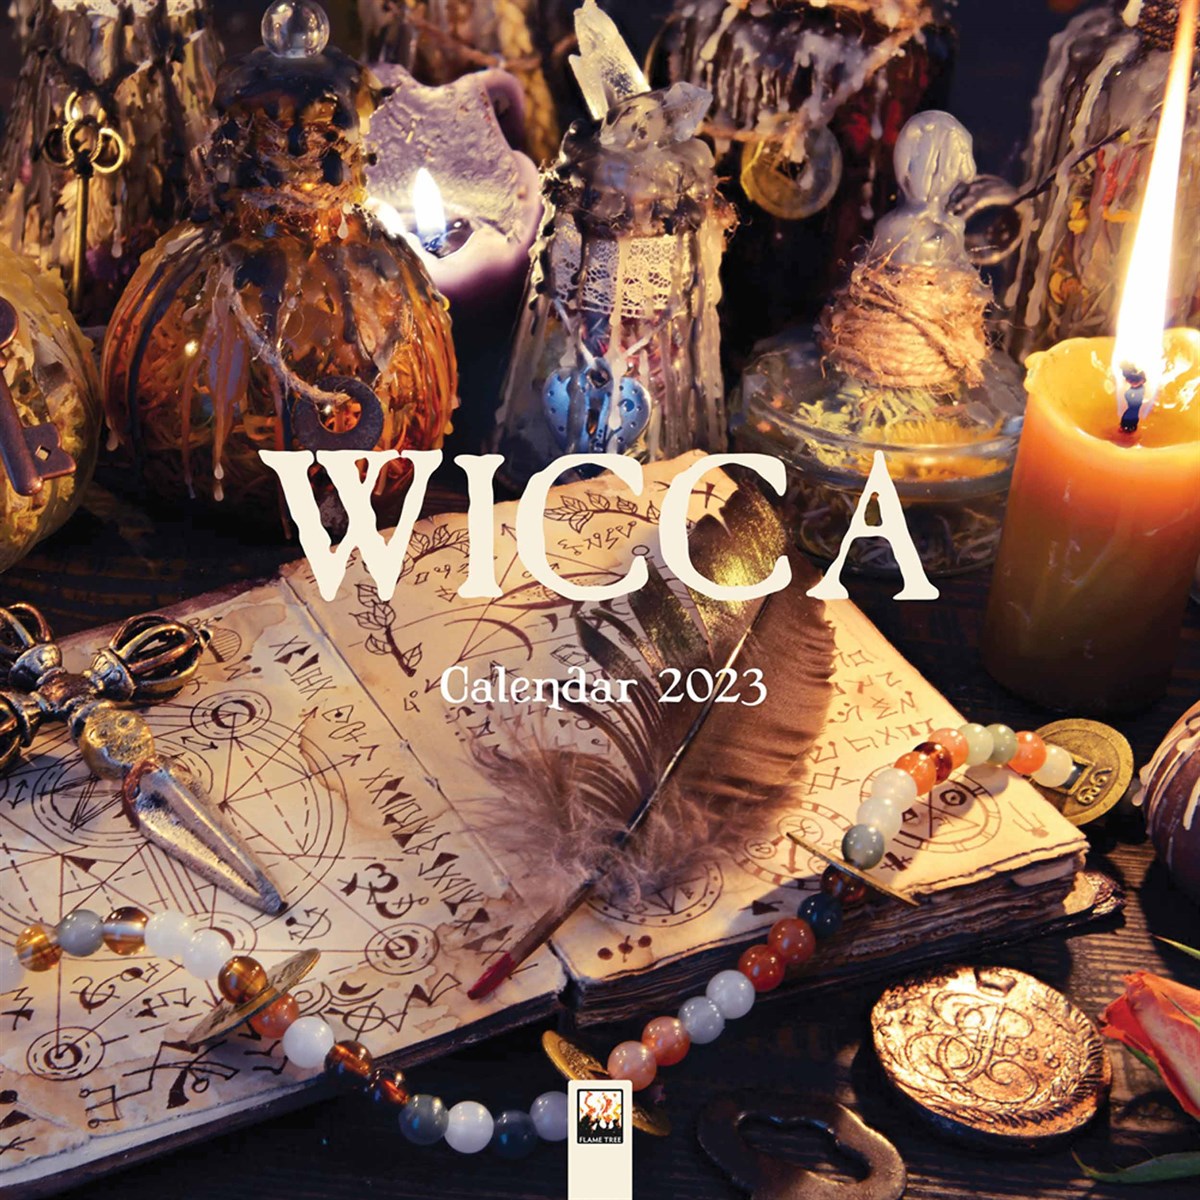 Wicca 2023 Calendars